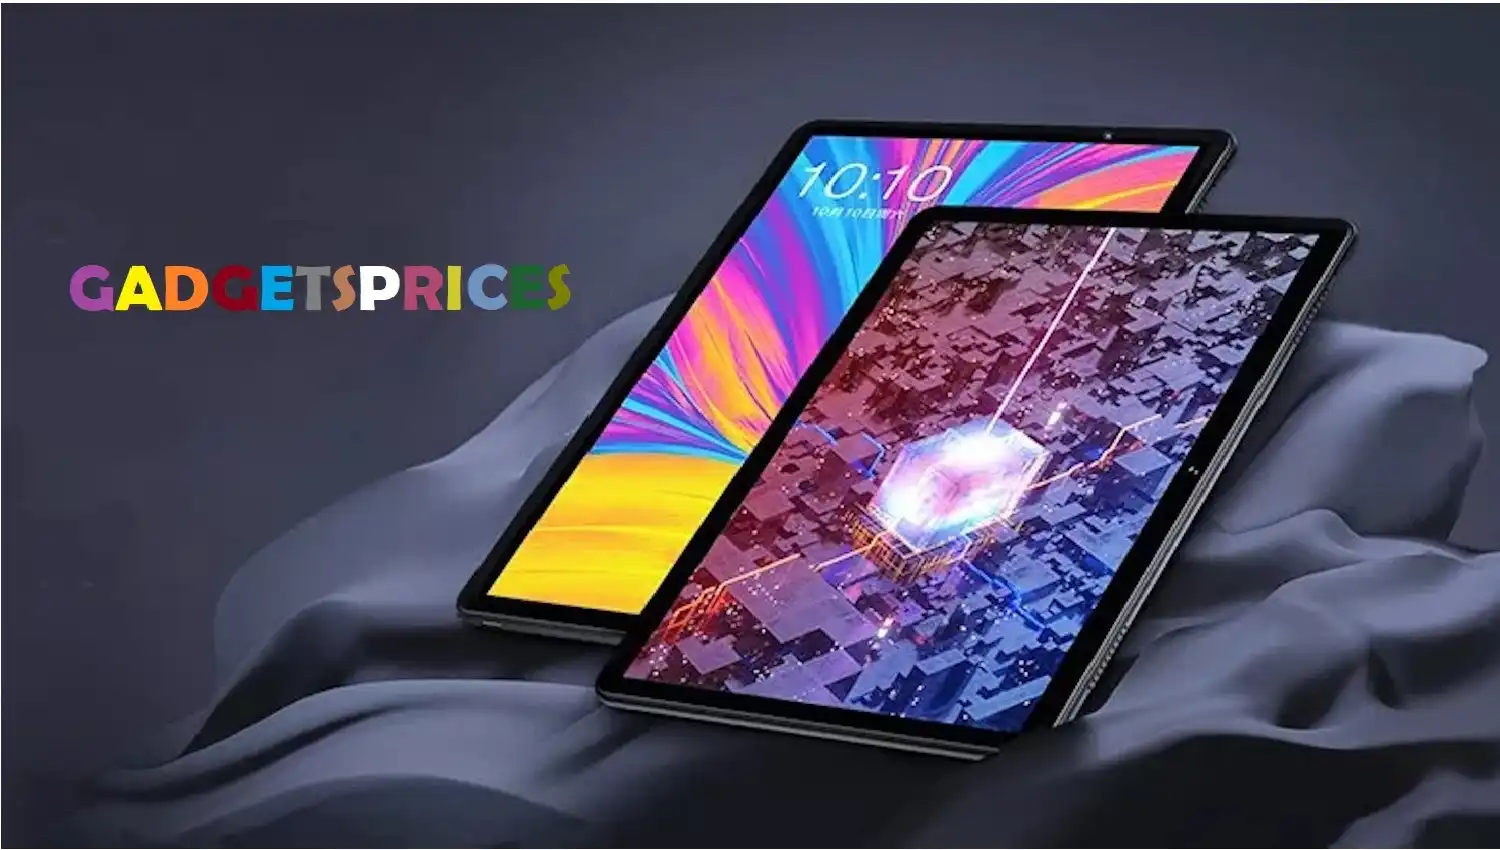 gadgetsprices.com tablets